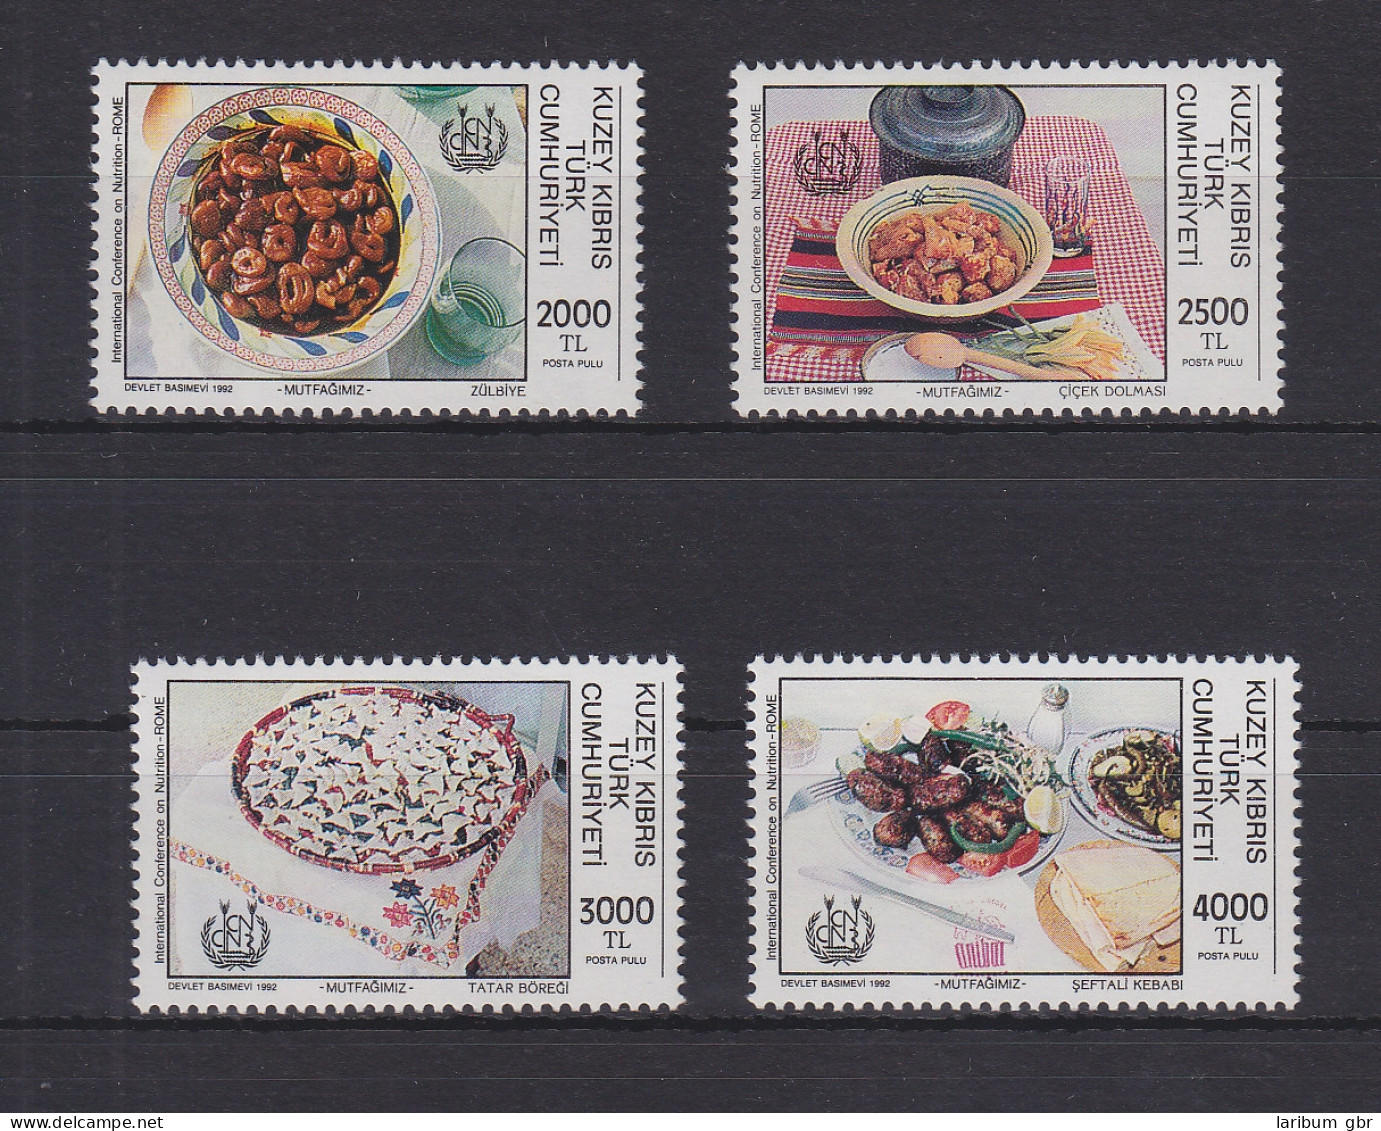 Türkisch-Zypern 347-350 Postfrisch Ernährung, Cyprus MNH #GE111 - Used Stamps